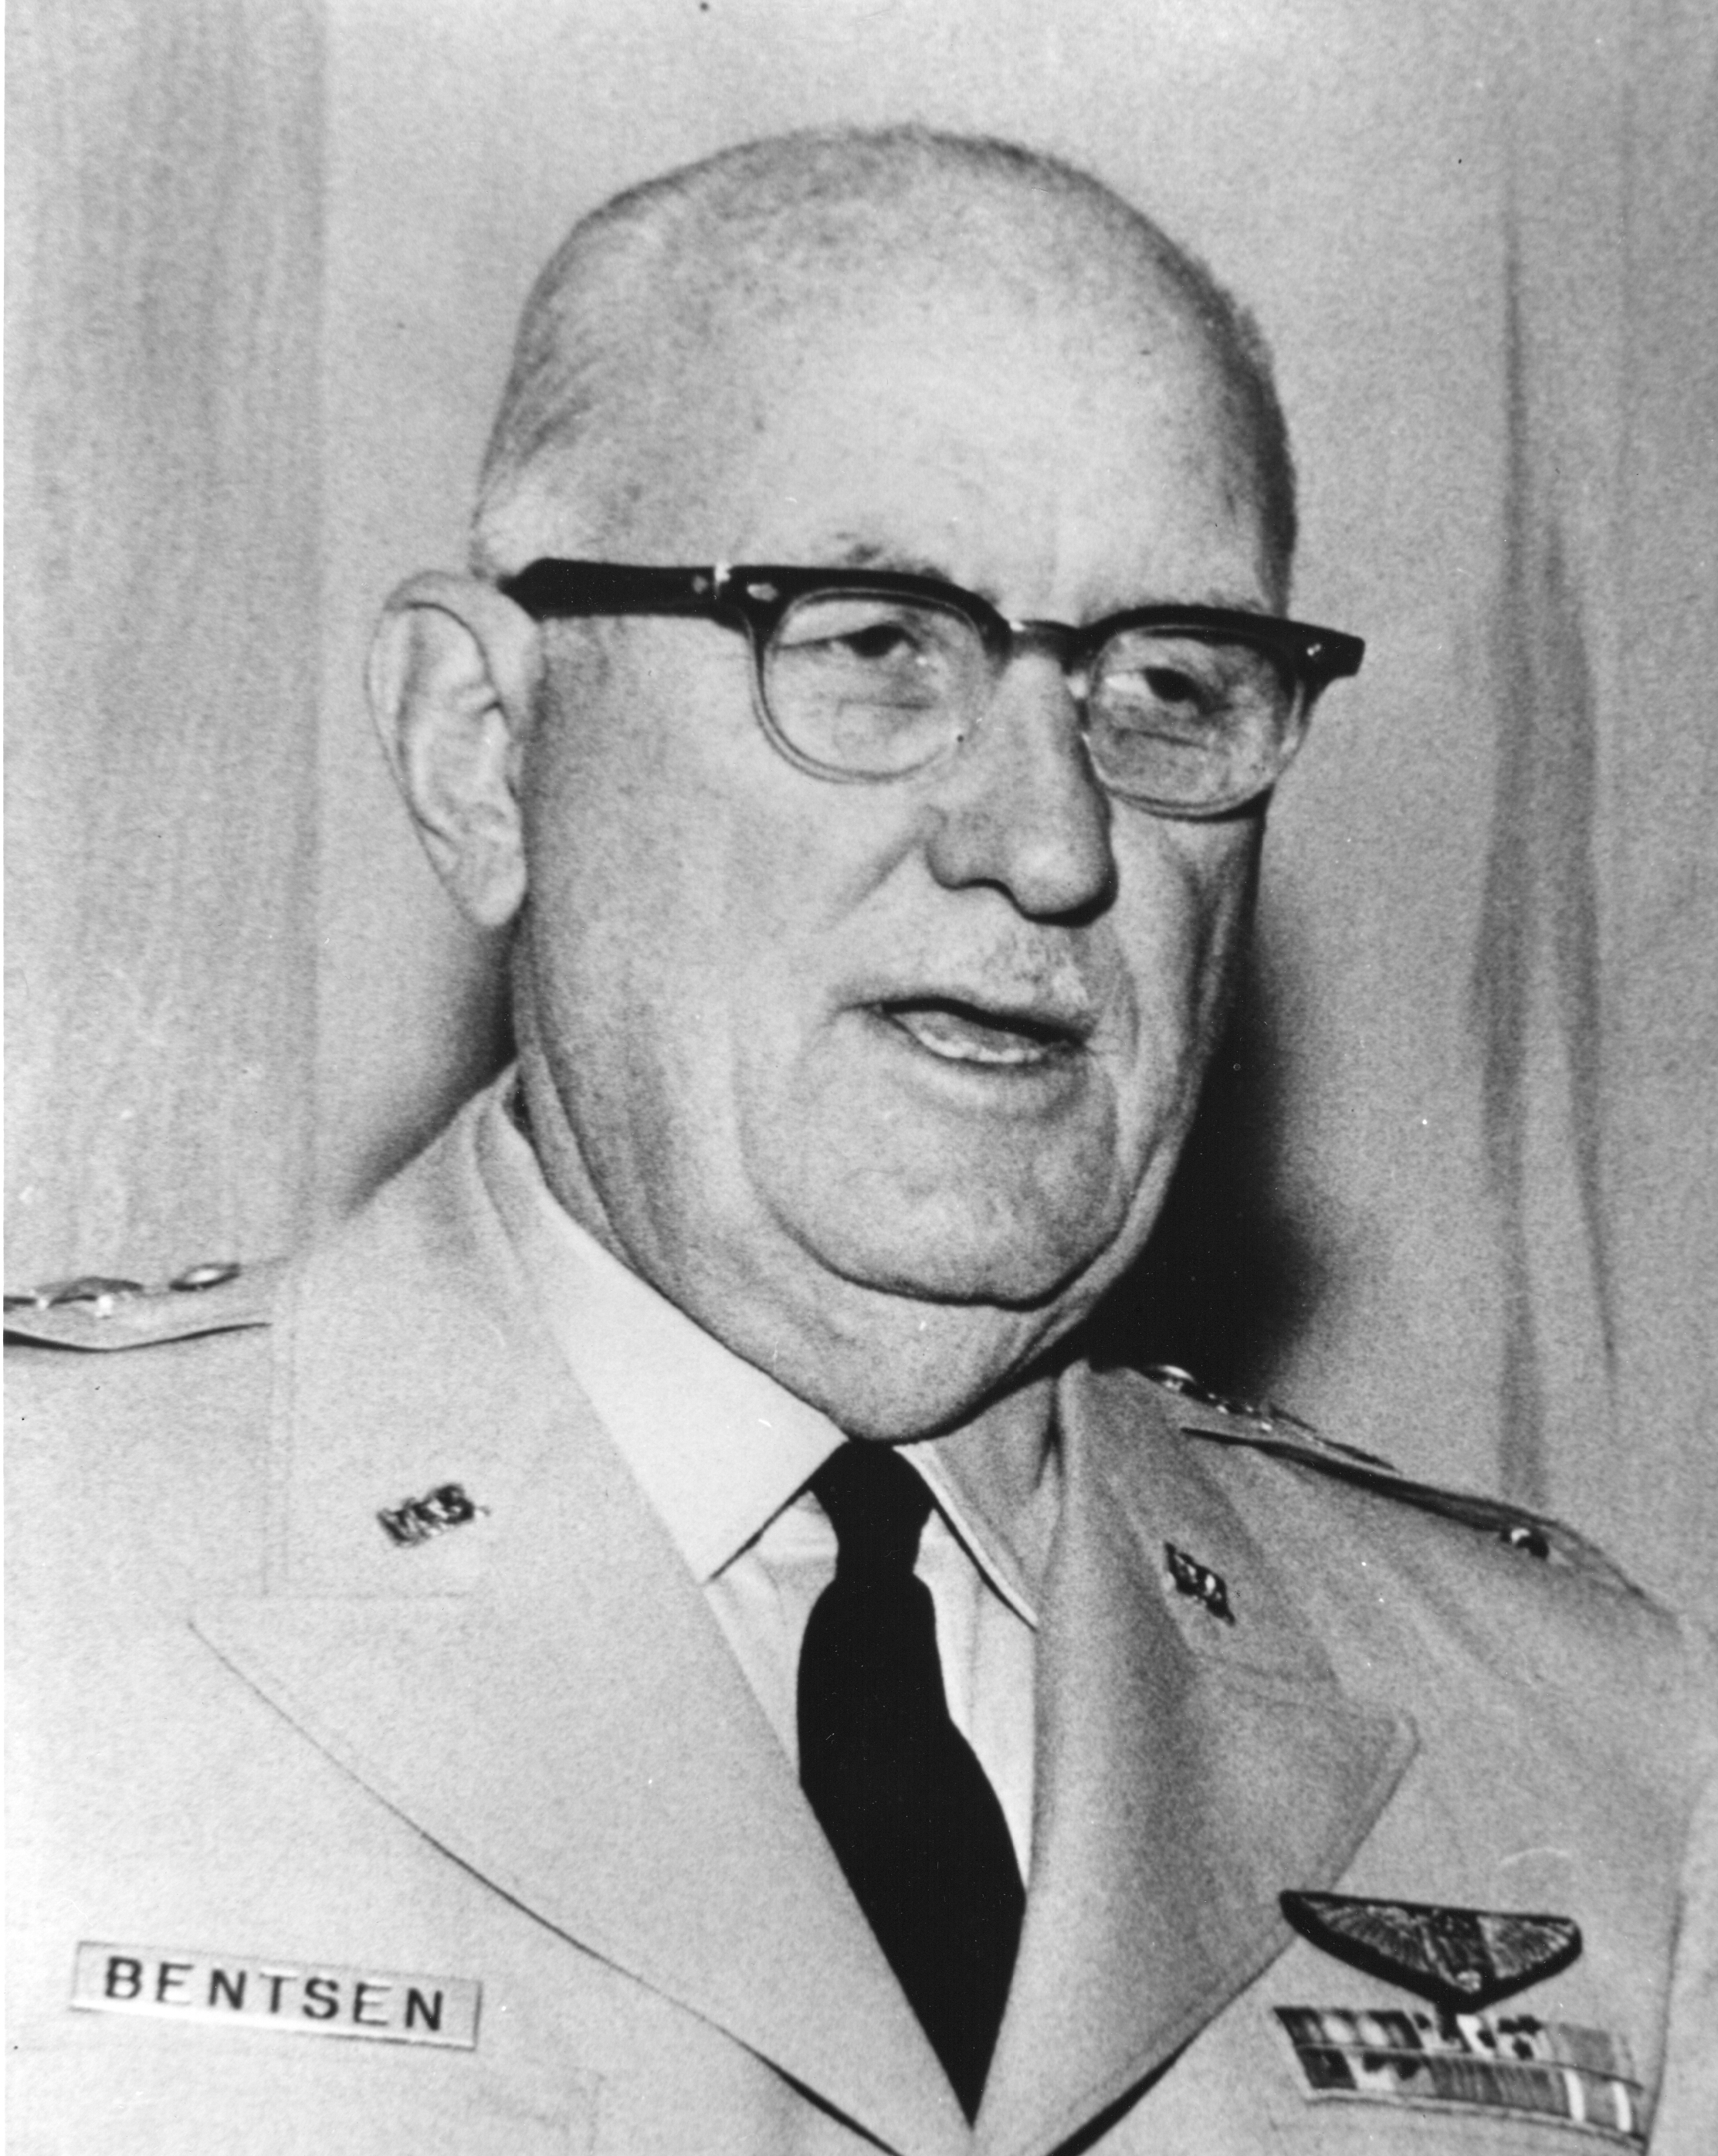 Major General Lloyd M. Bentsen